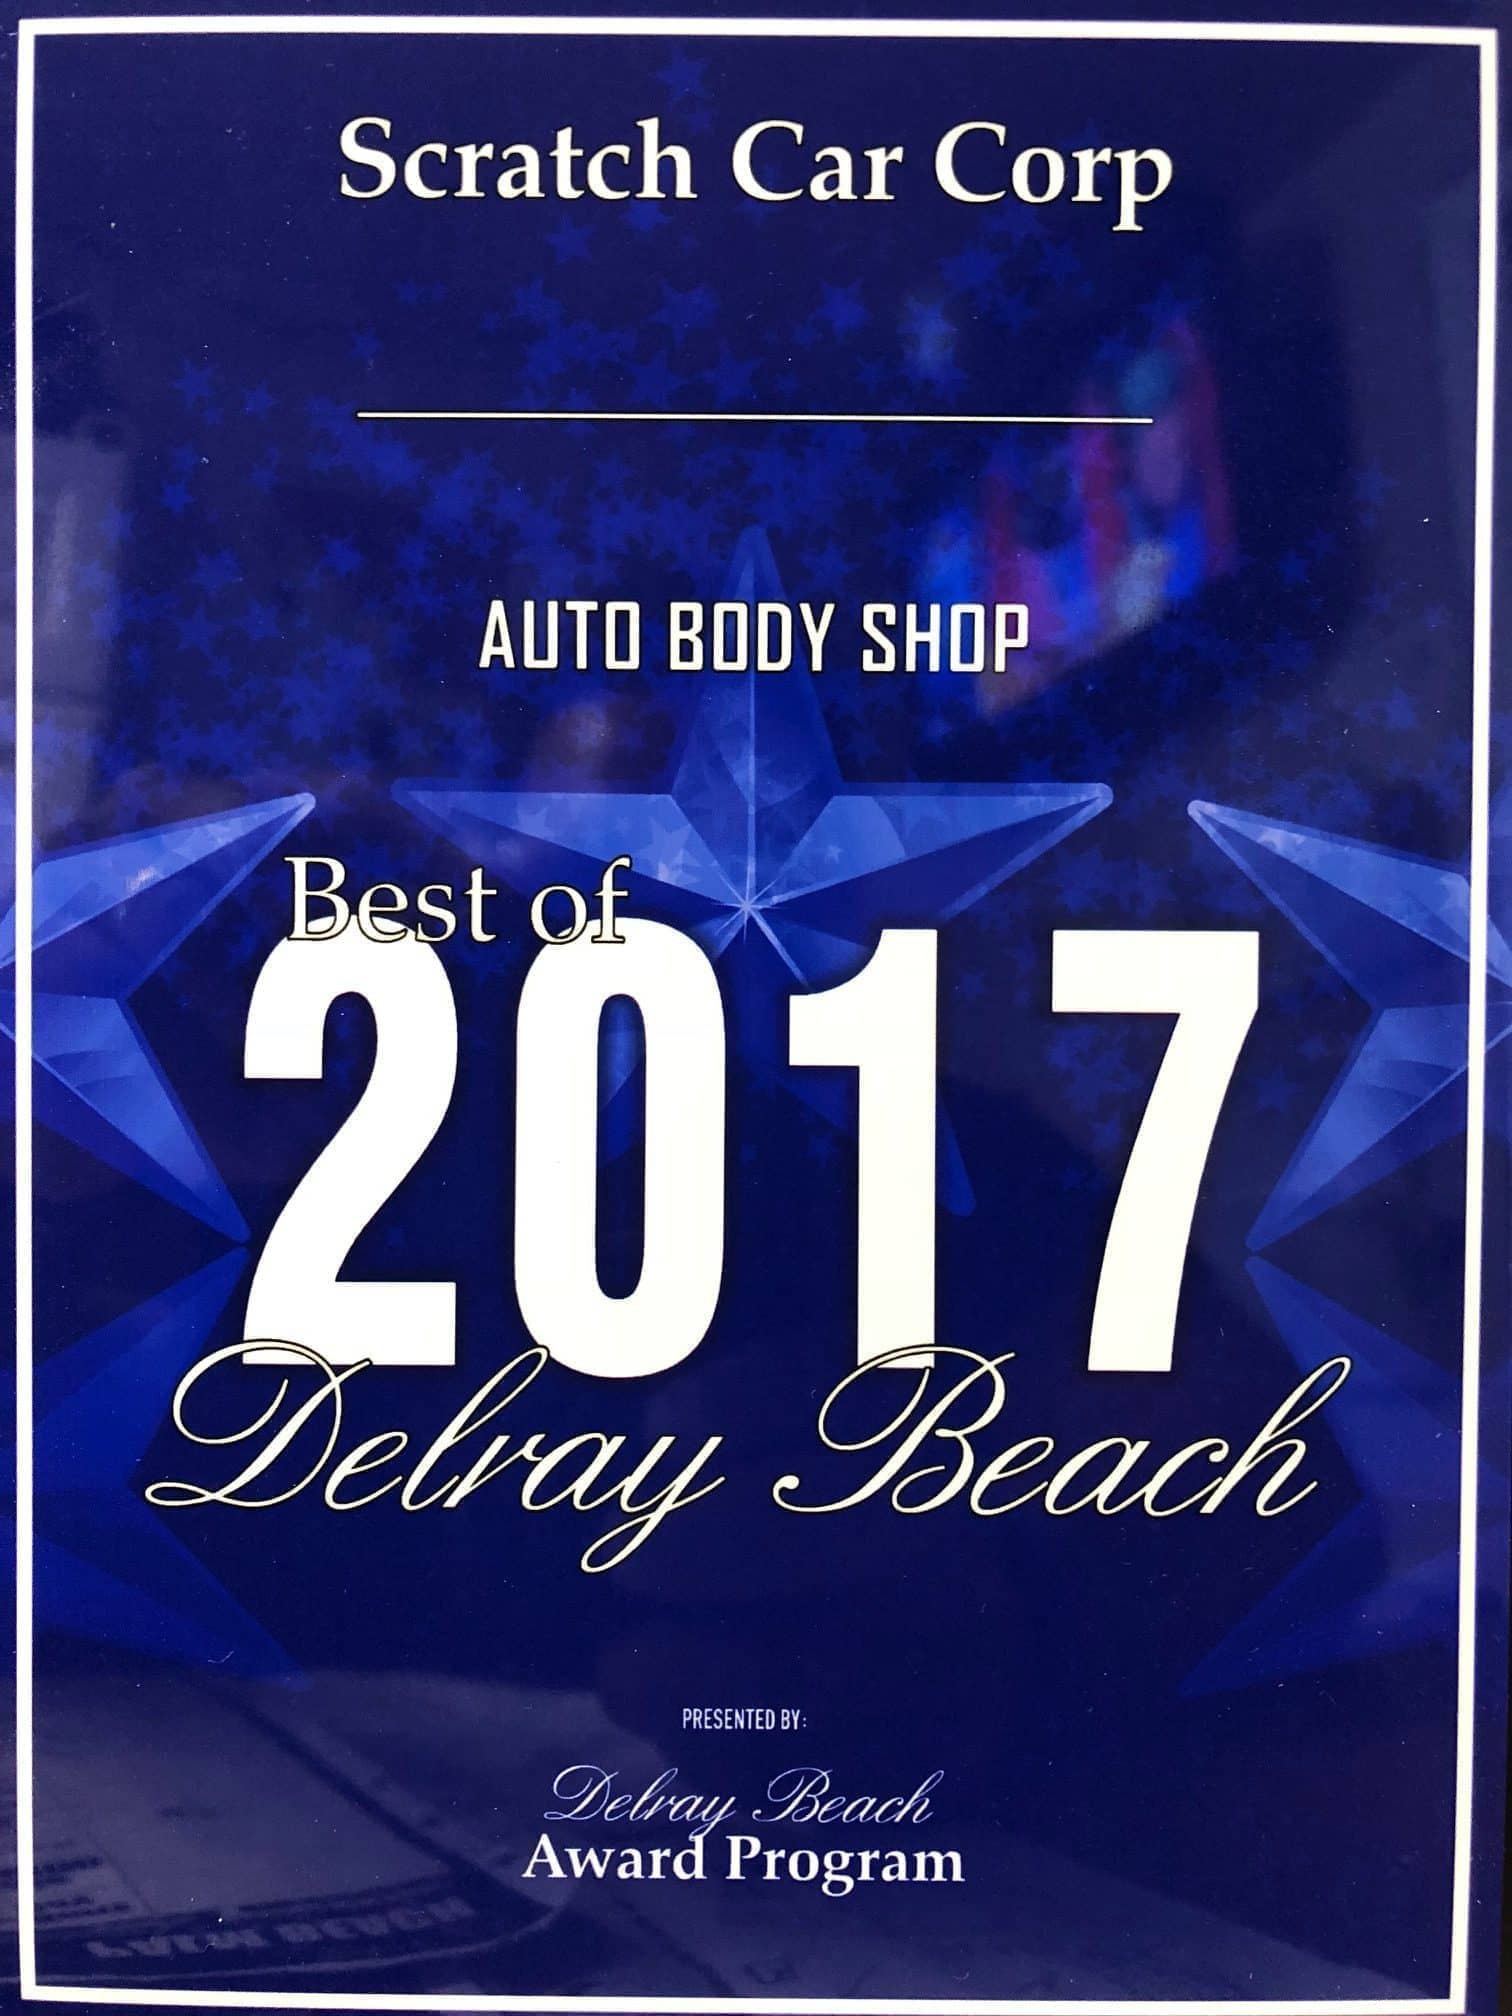 Auto Body Shop Award